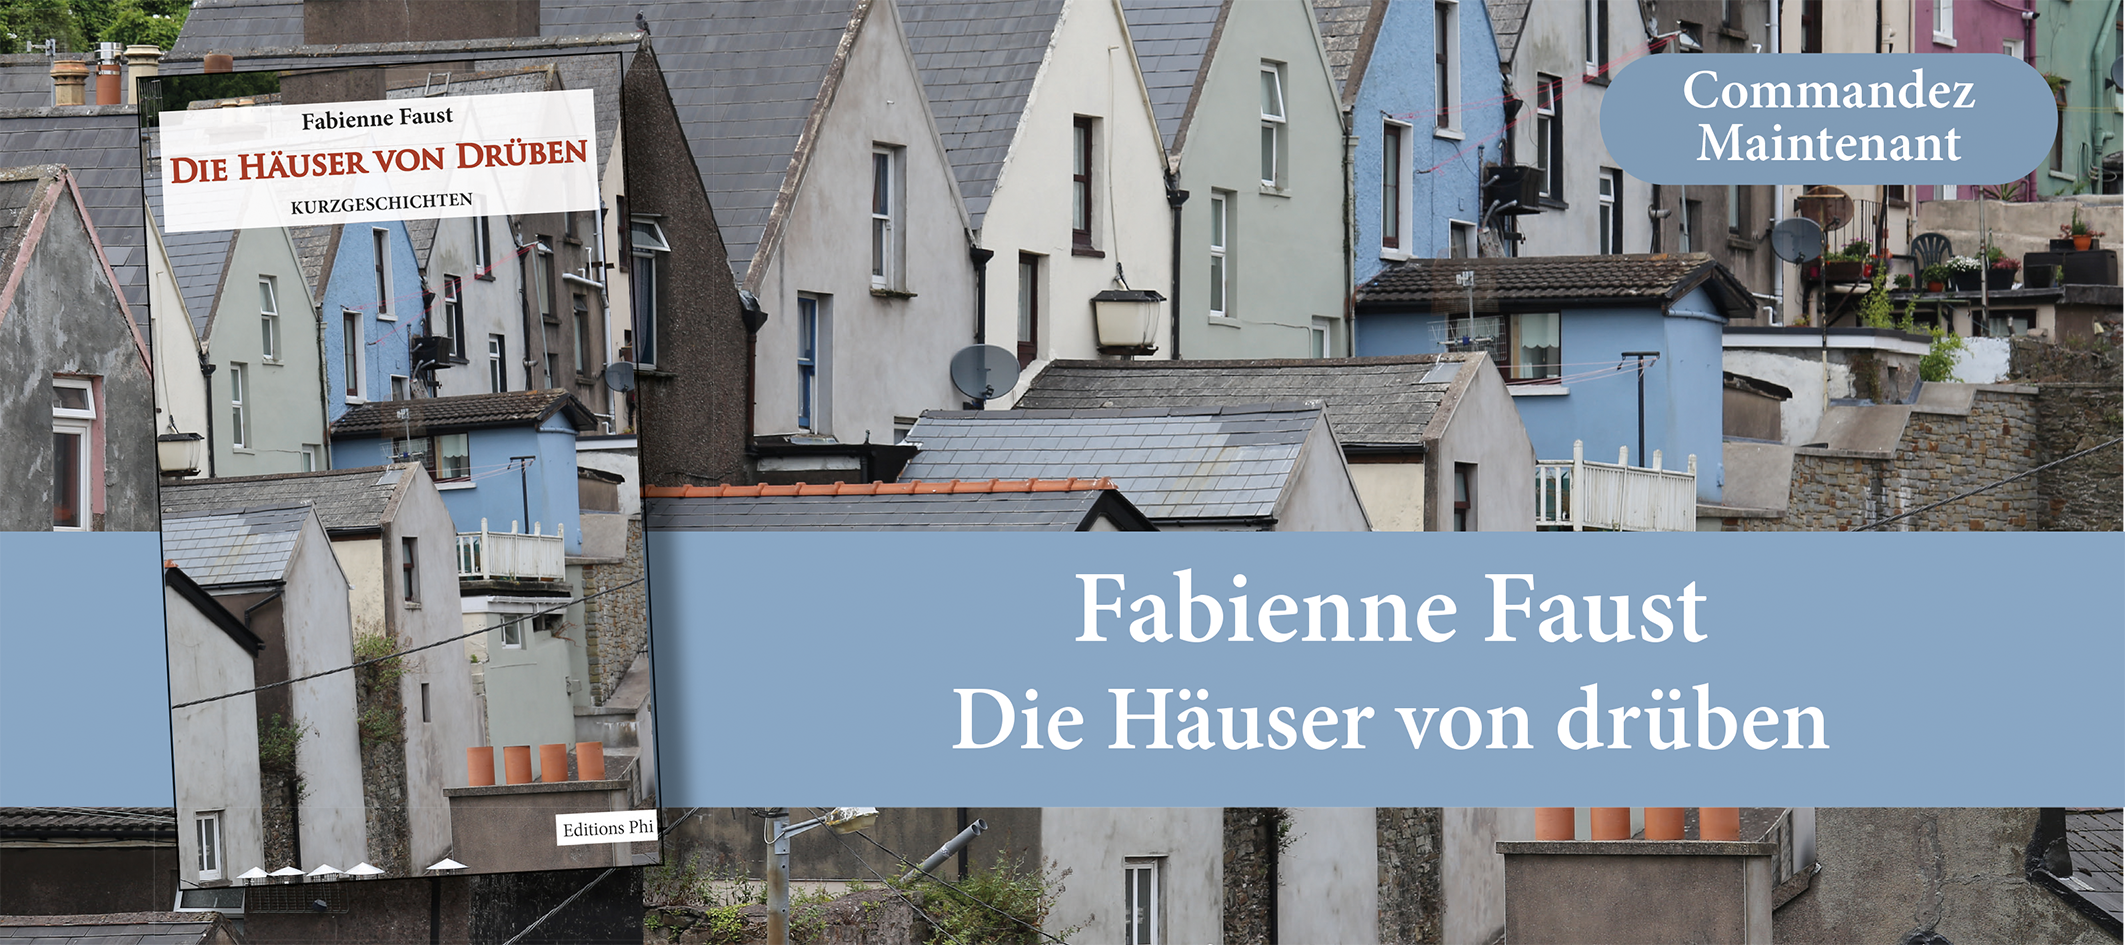 http://www.editionsphi.lu/fr/deutsch/554-fabienne-faust-die-hauser-von-druben.html